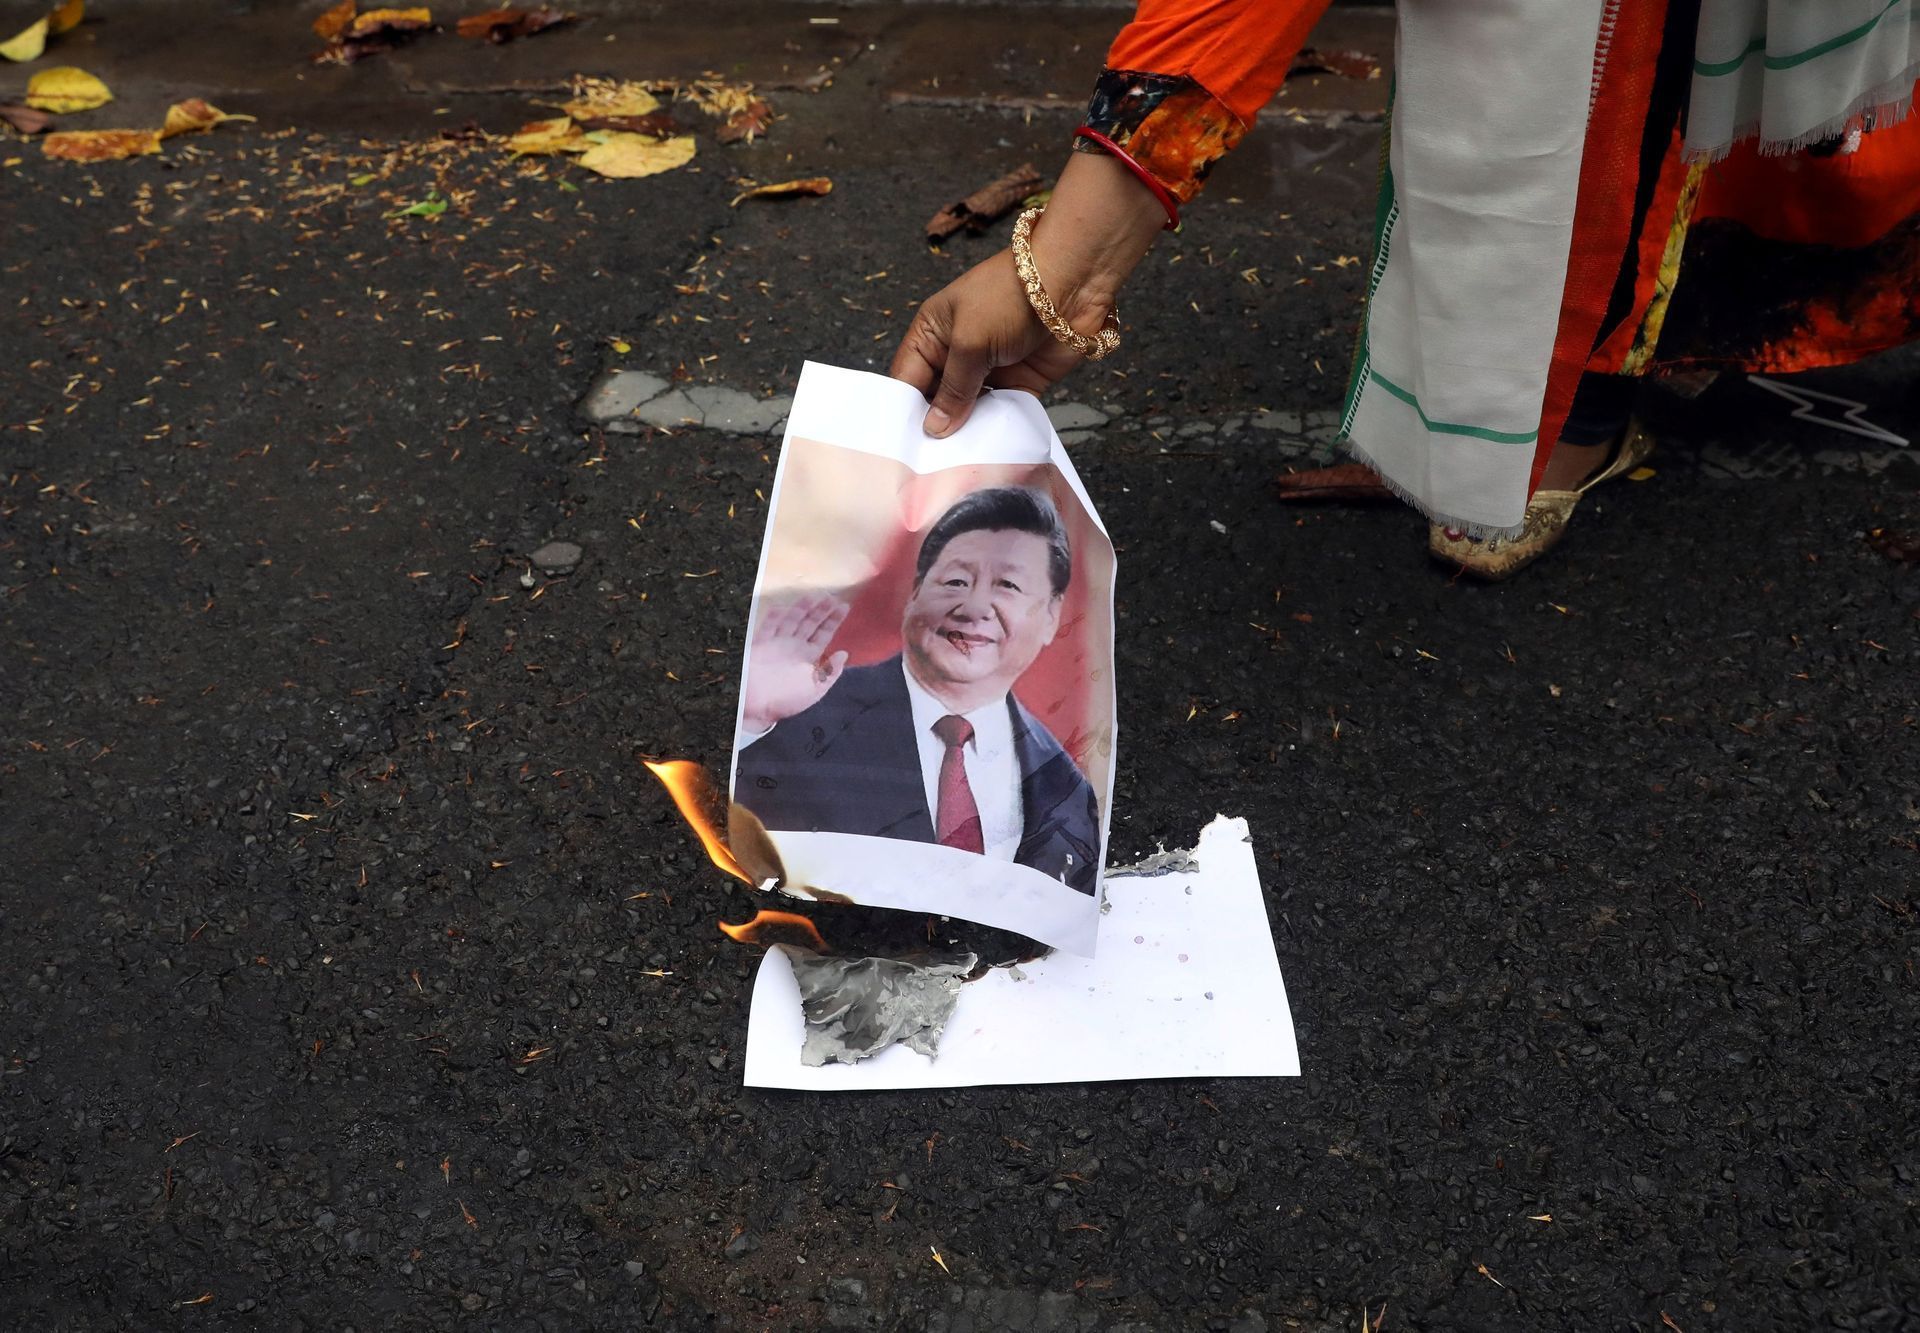 indie čína hranice střet demonstrace bojkot pohřeb